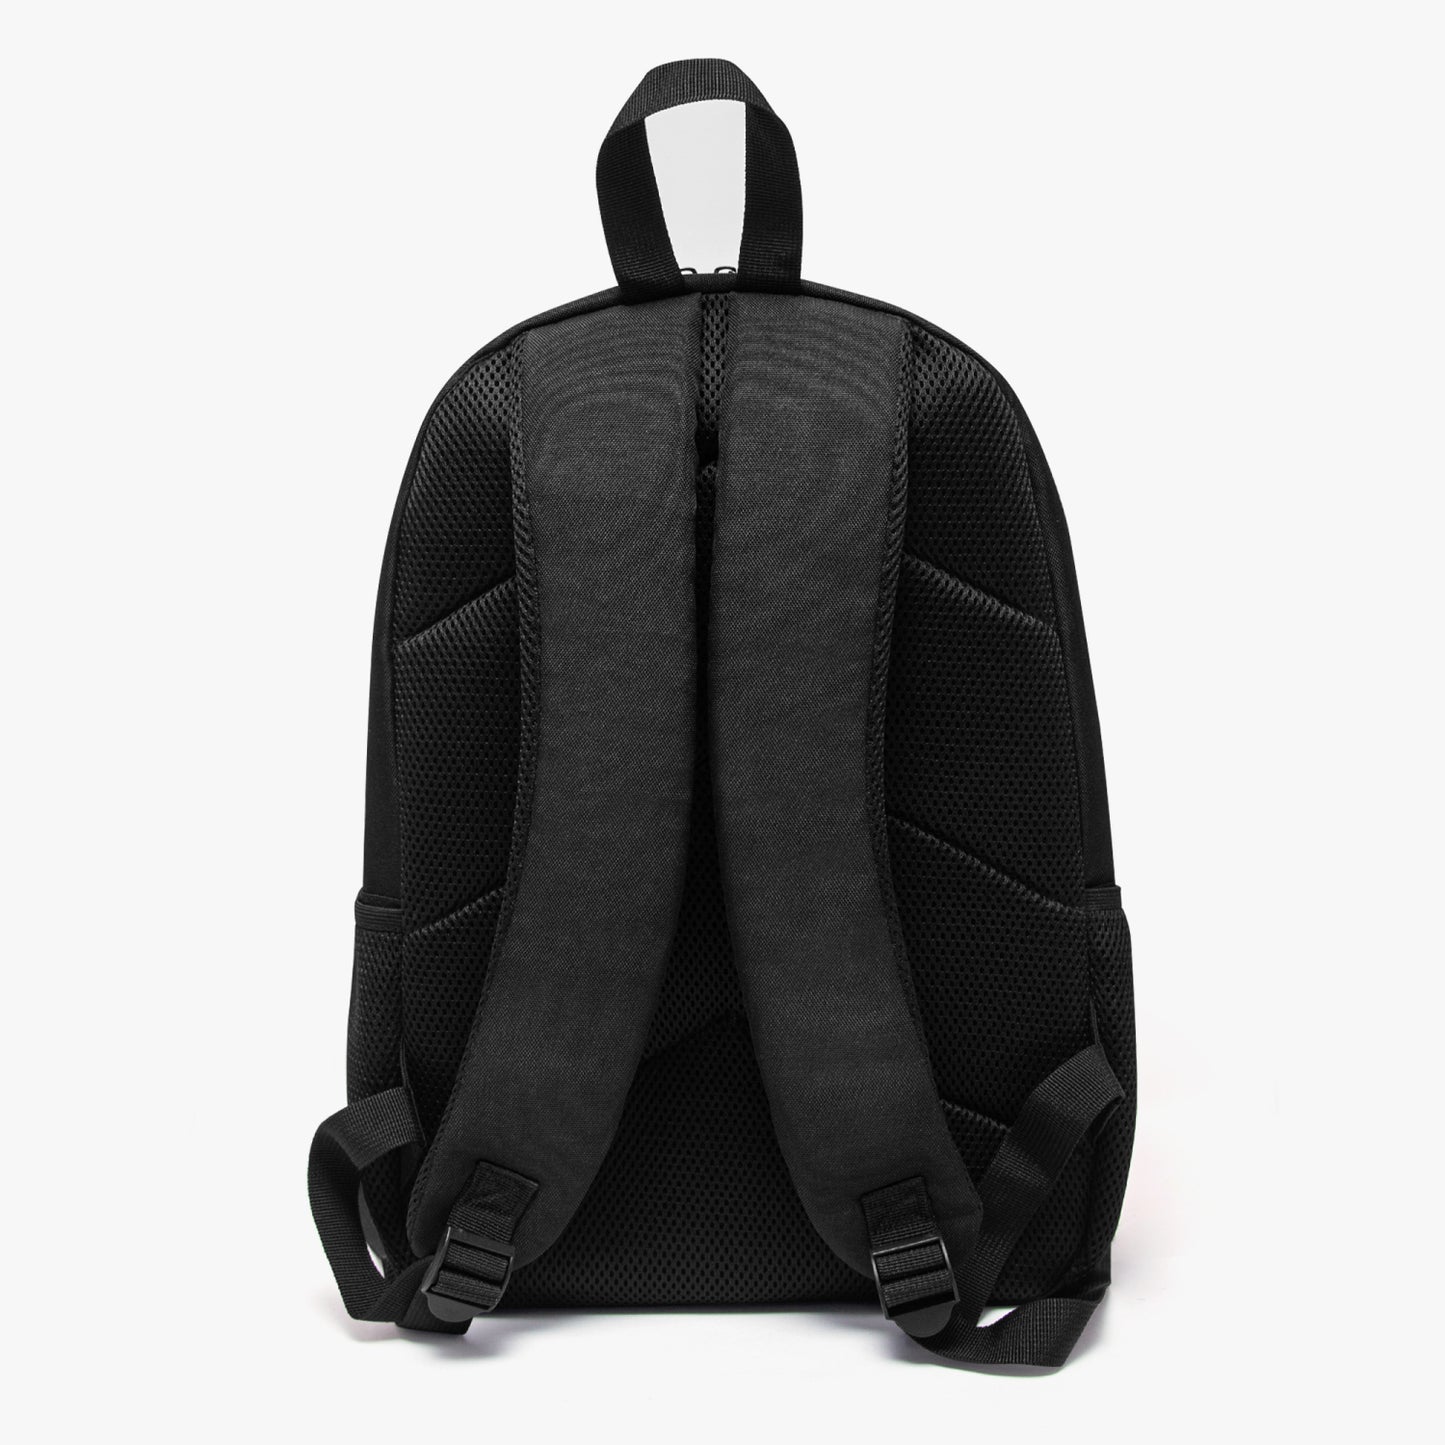 Fullmetal Alchemist Laptop Backpack